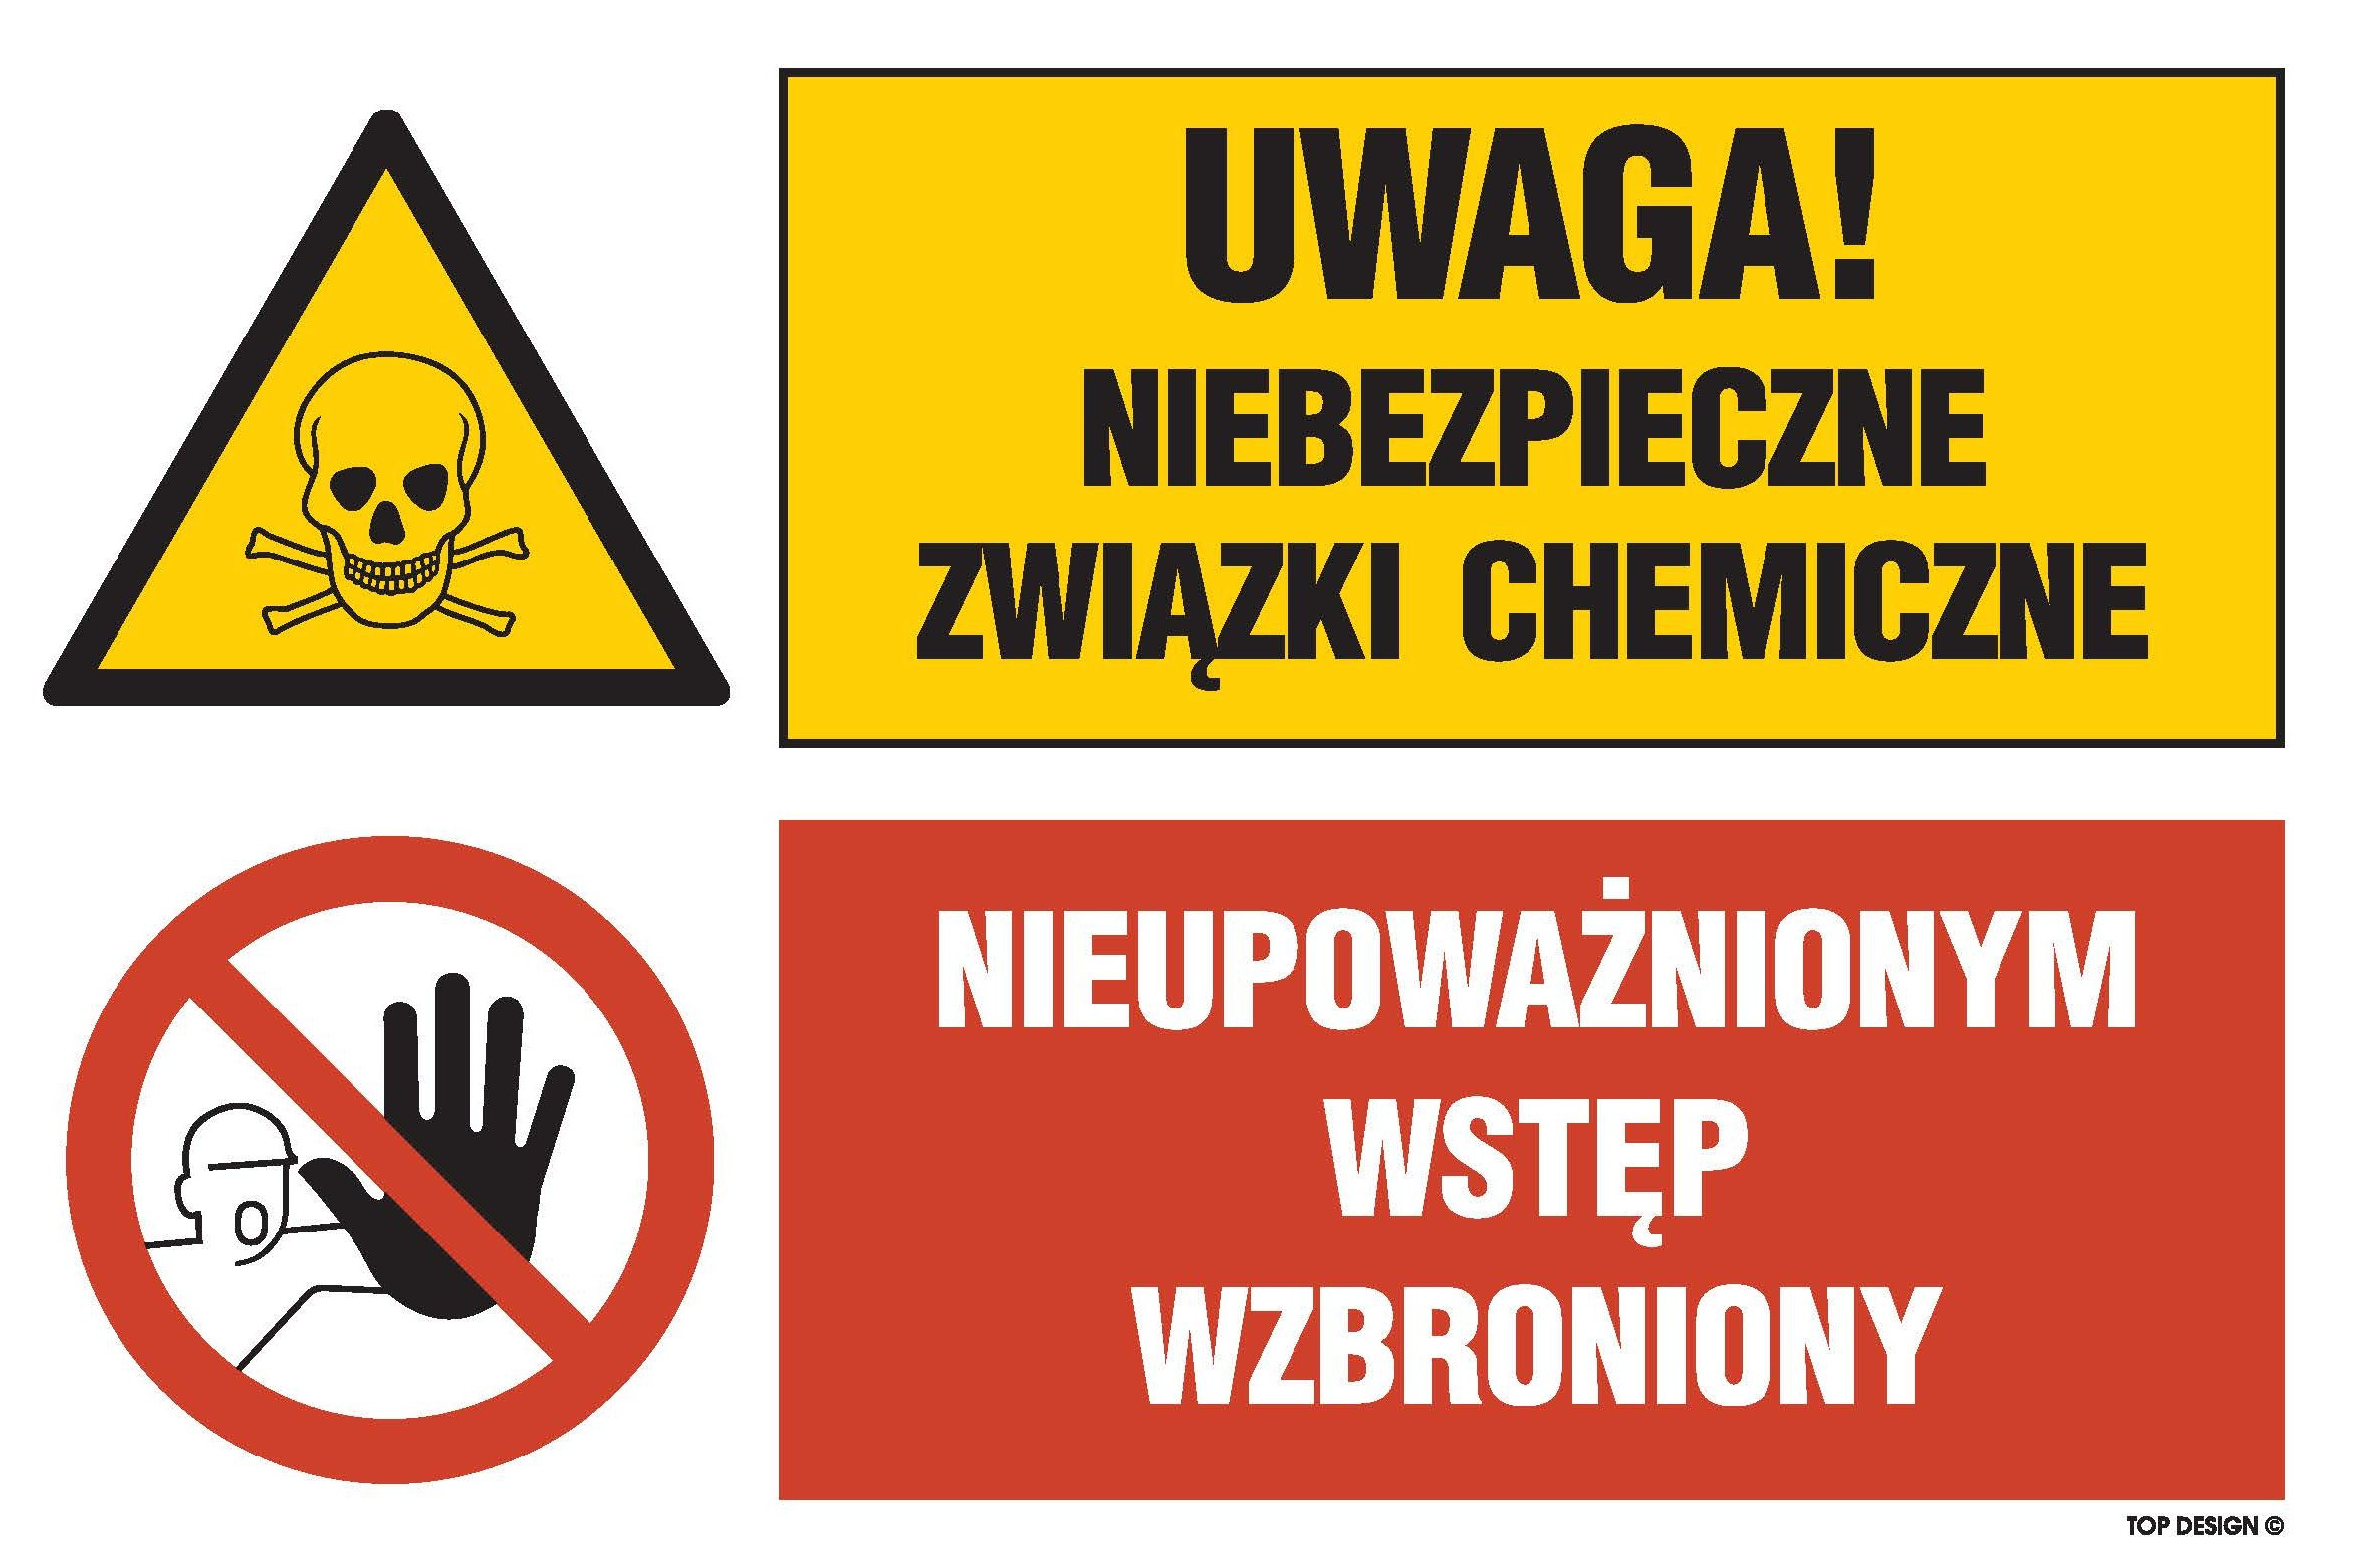 Znak - Uwaga! Niebezpieczne związki chemiczne Nieupoważnionym wstęp wzbroniony GN004